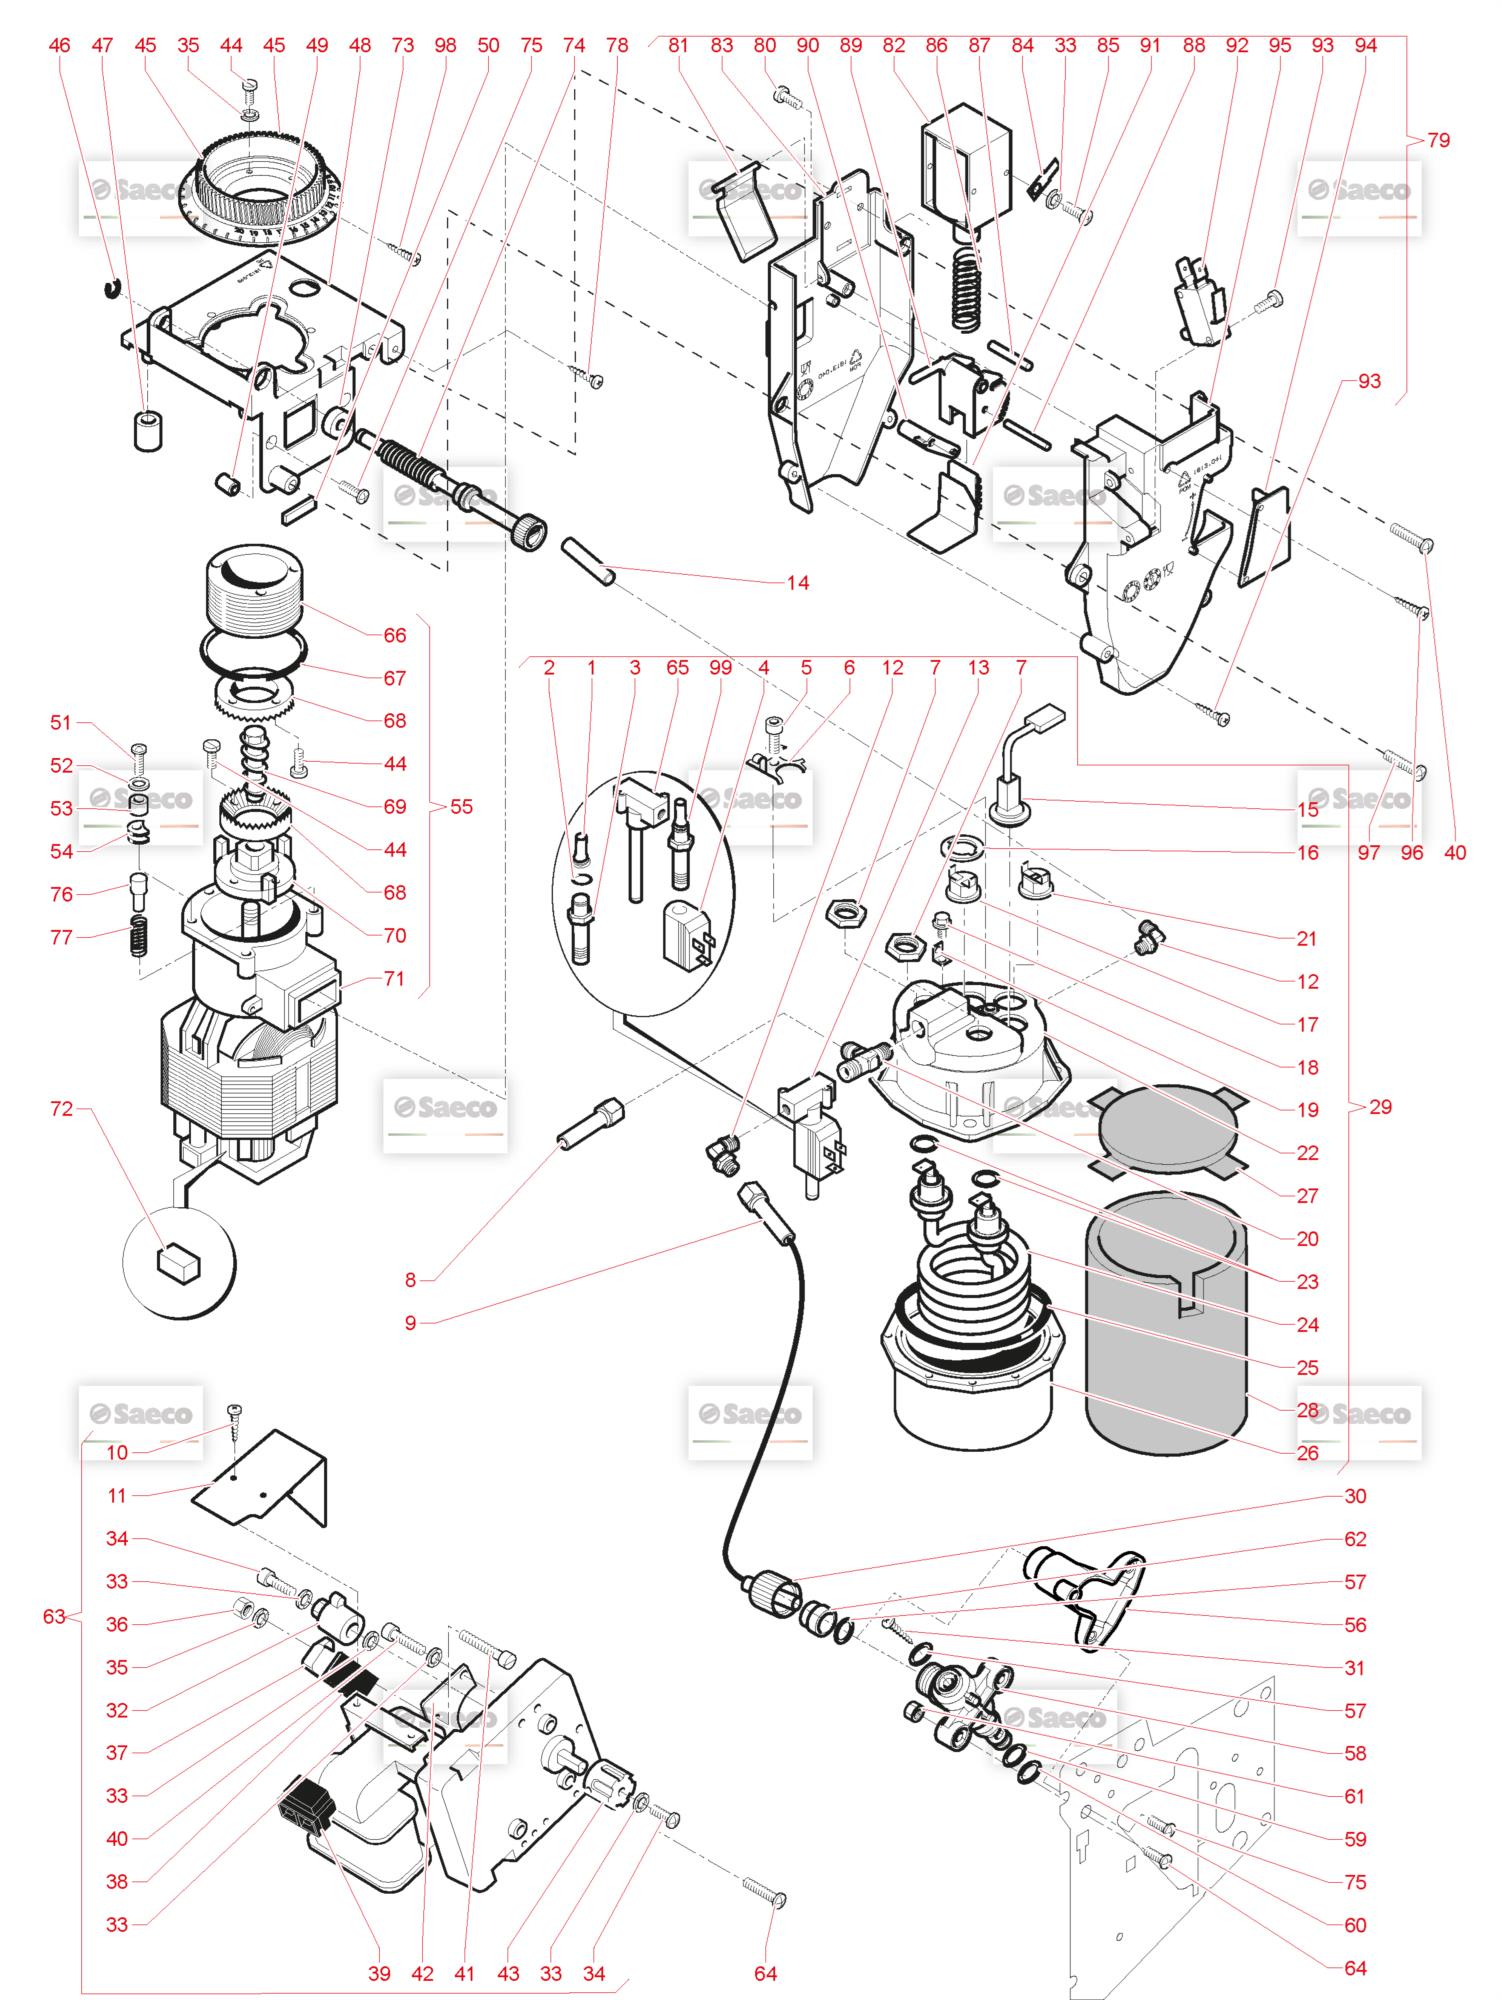 Boiler, Macinator - Componente